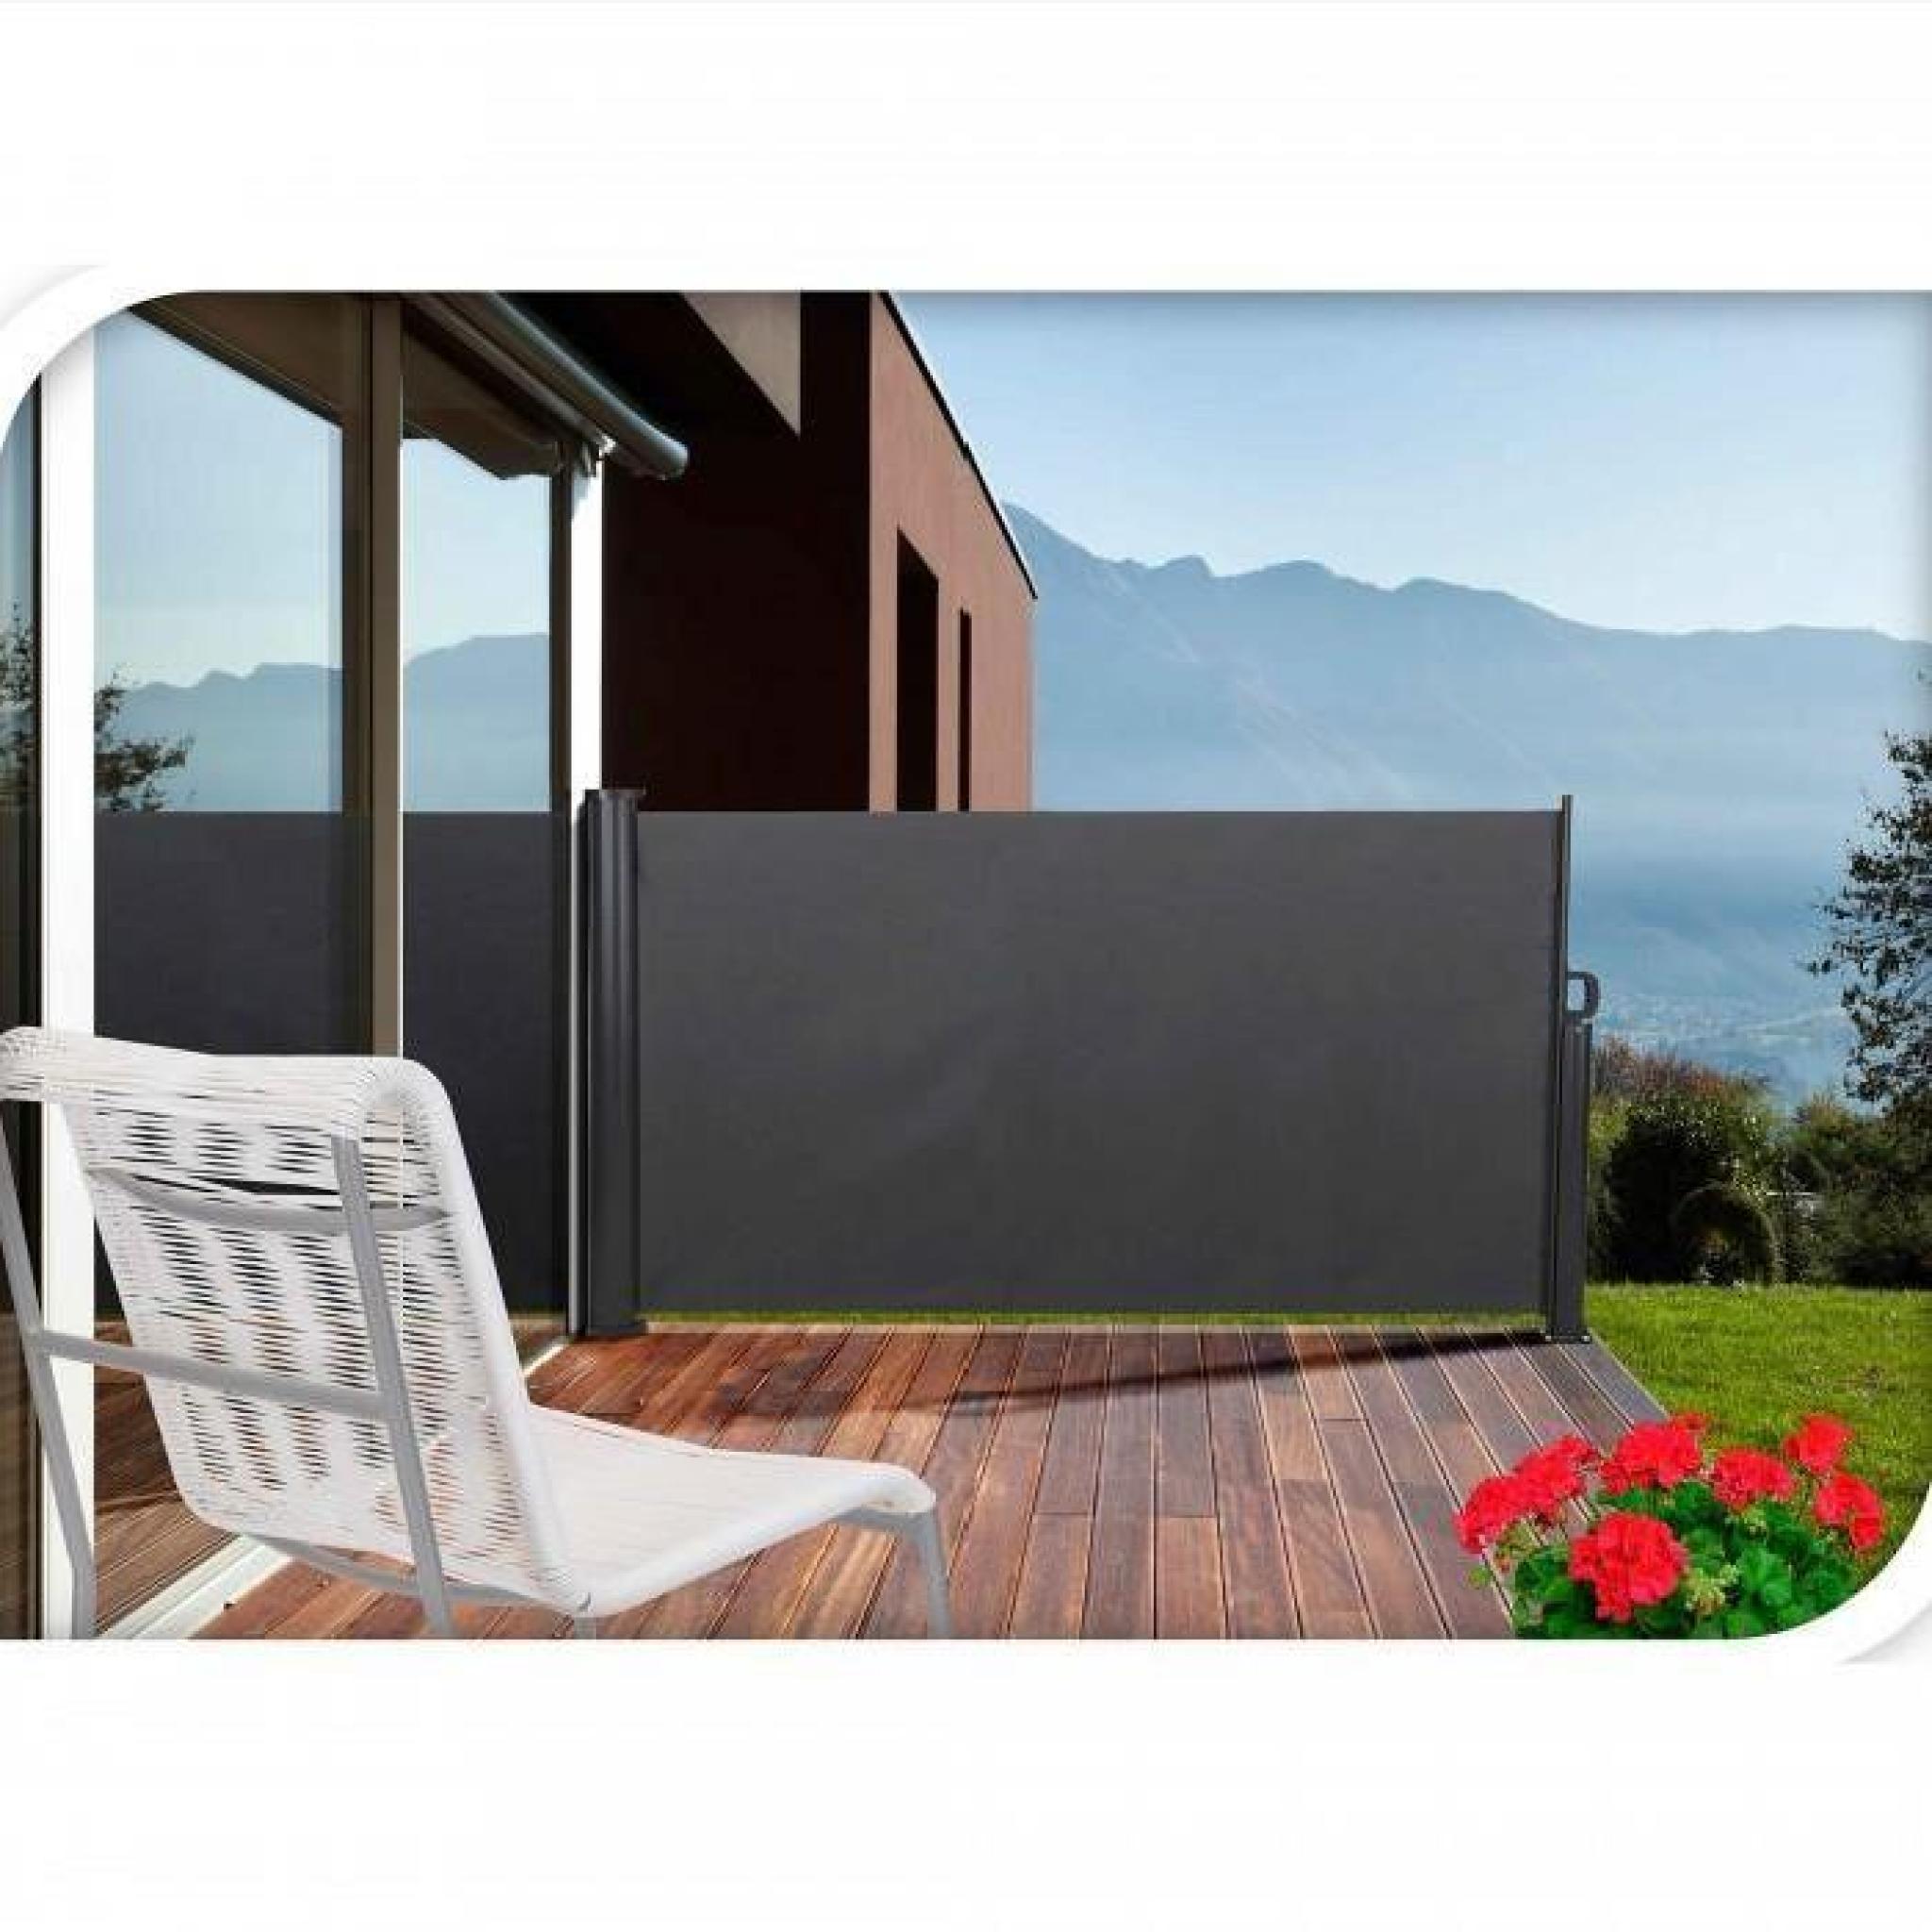 Paravent retractable pour votre terrasse aux dimensions de 3 x 1.4 m. Fixations mur et sol fournies. Toile polyester 28 pas cher